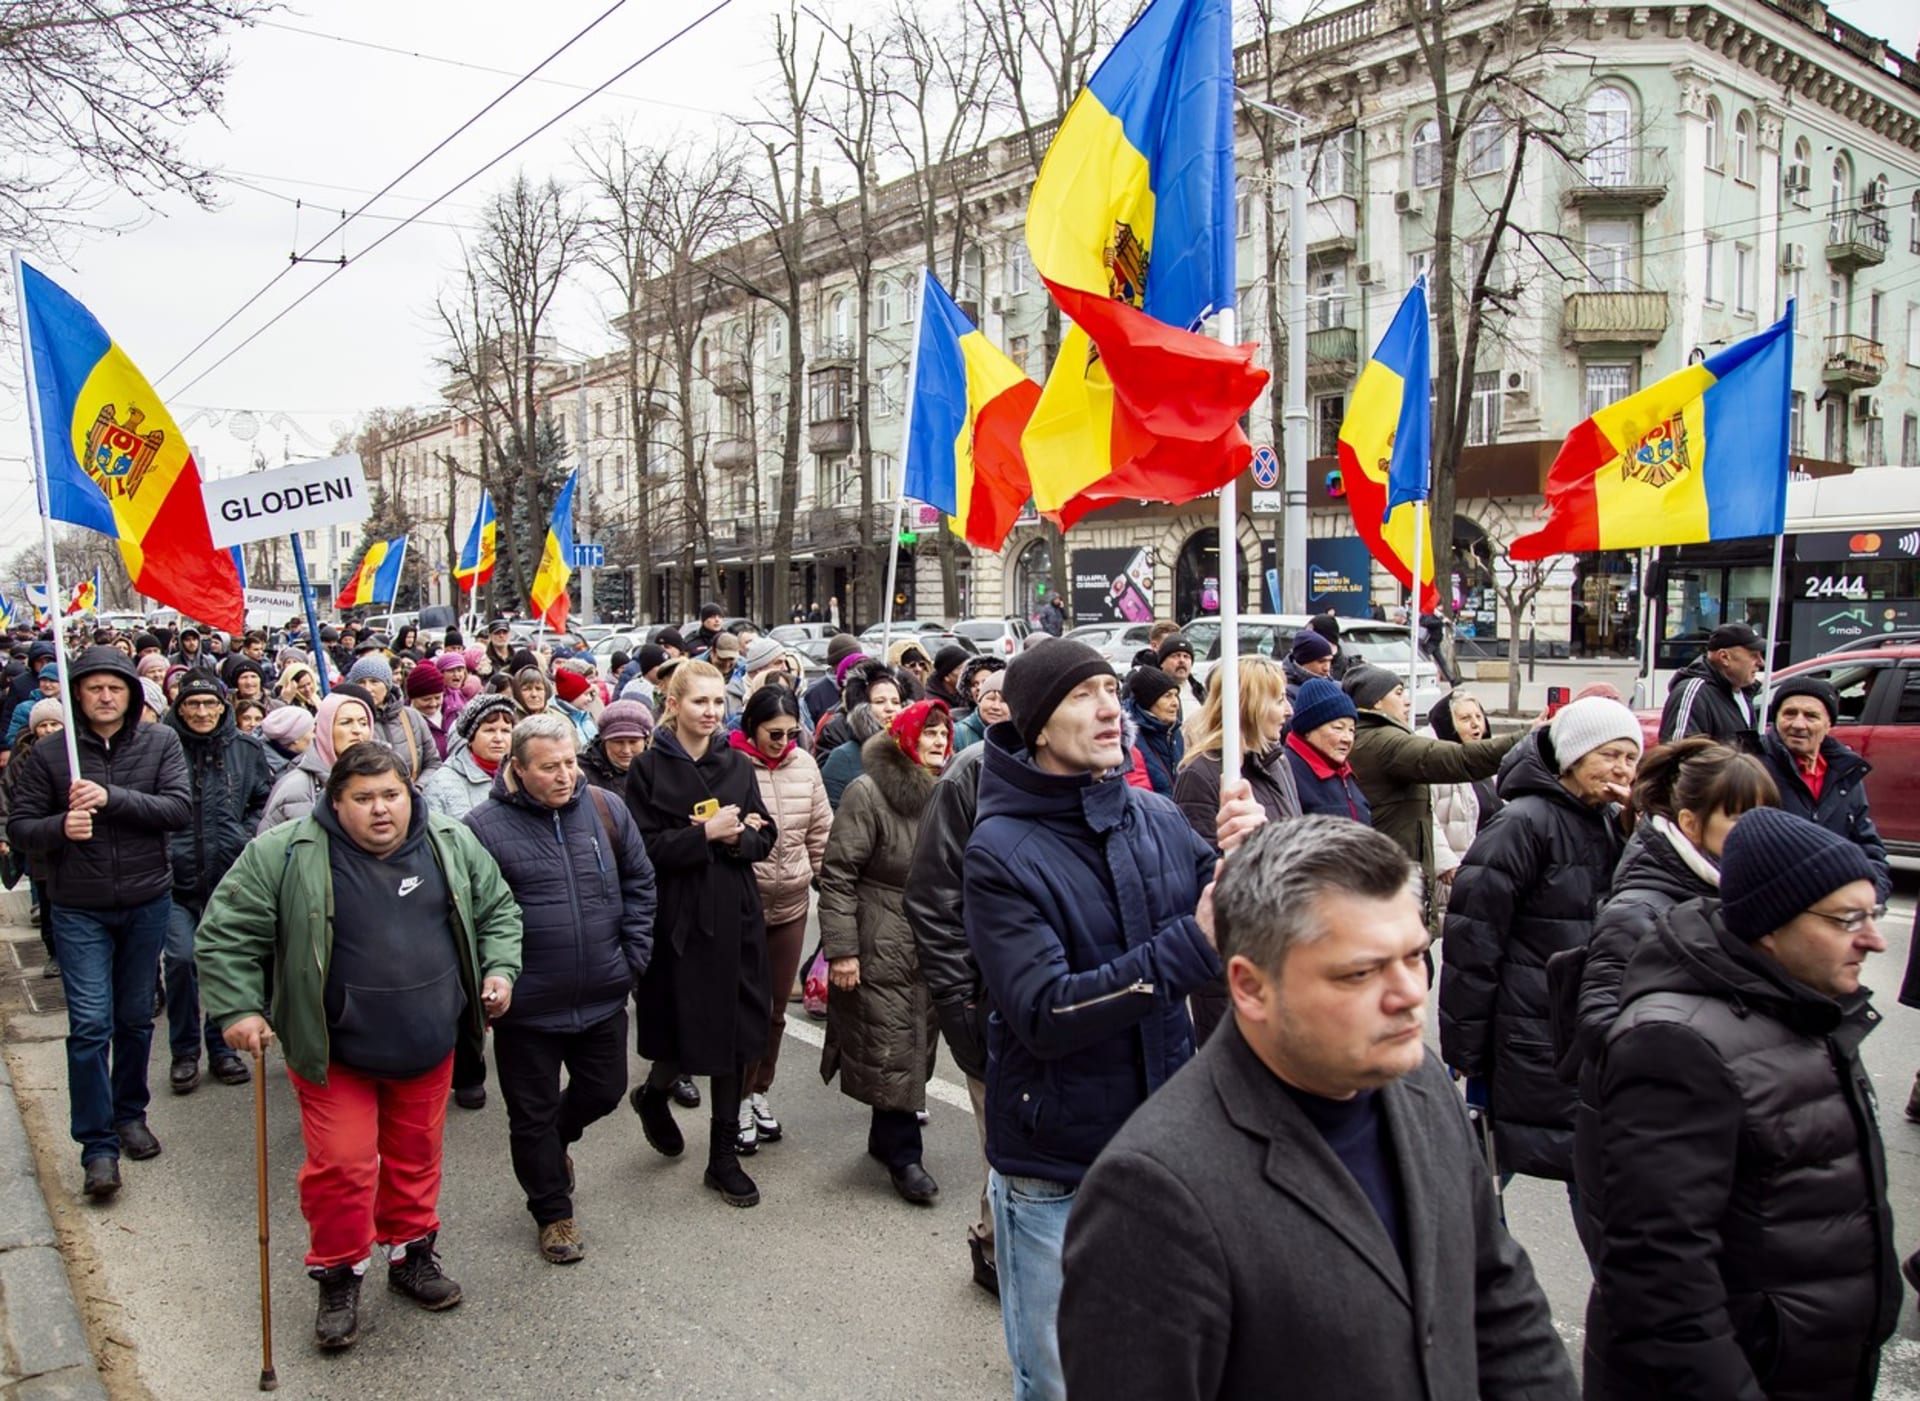 Část Moldavanů protestuje proti prozápadní vládě. Chtějí konec prezidentky, vlády a volají po neutralitě v konfliktu na Ukrajině.